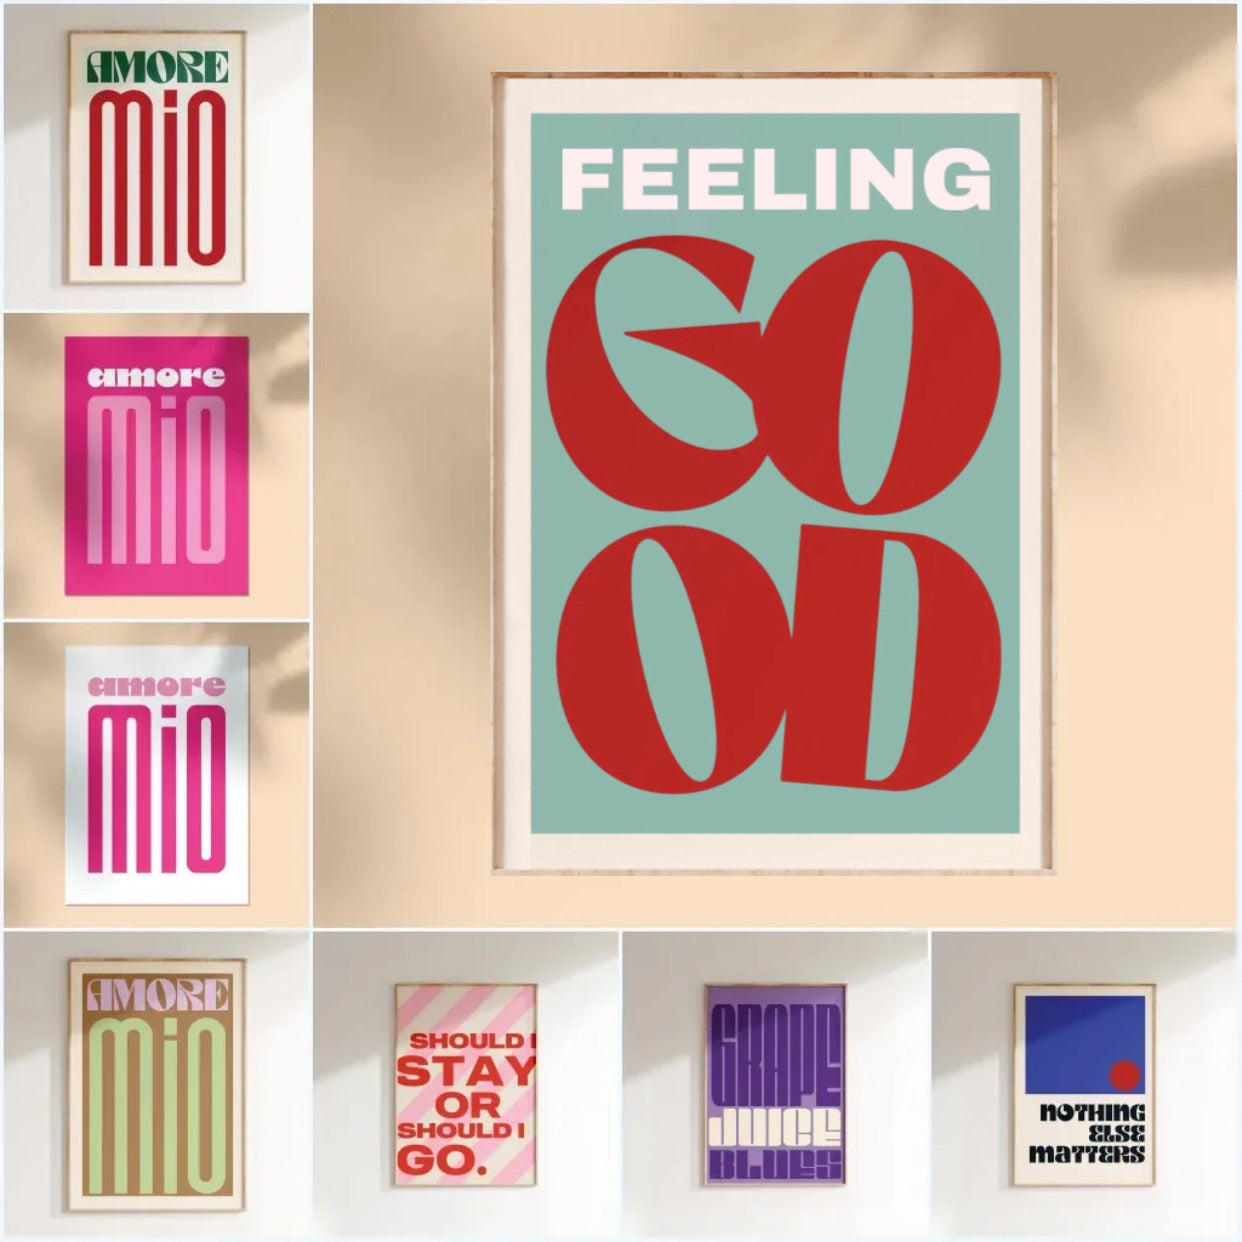 " feeling good " poster